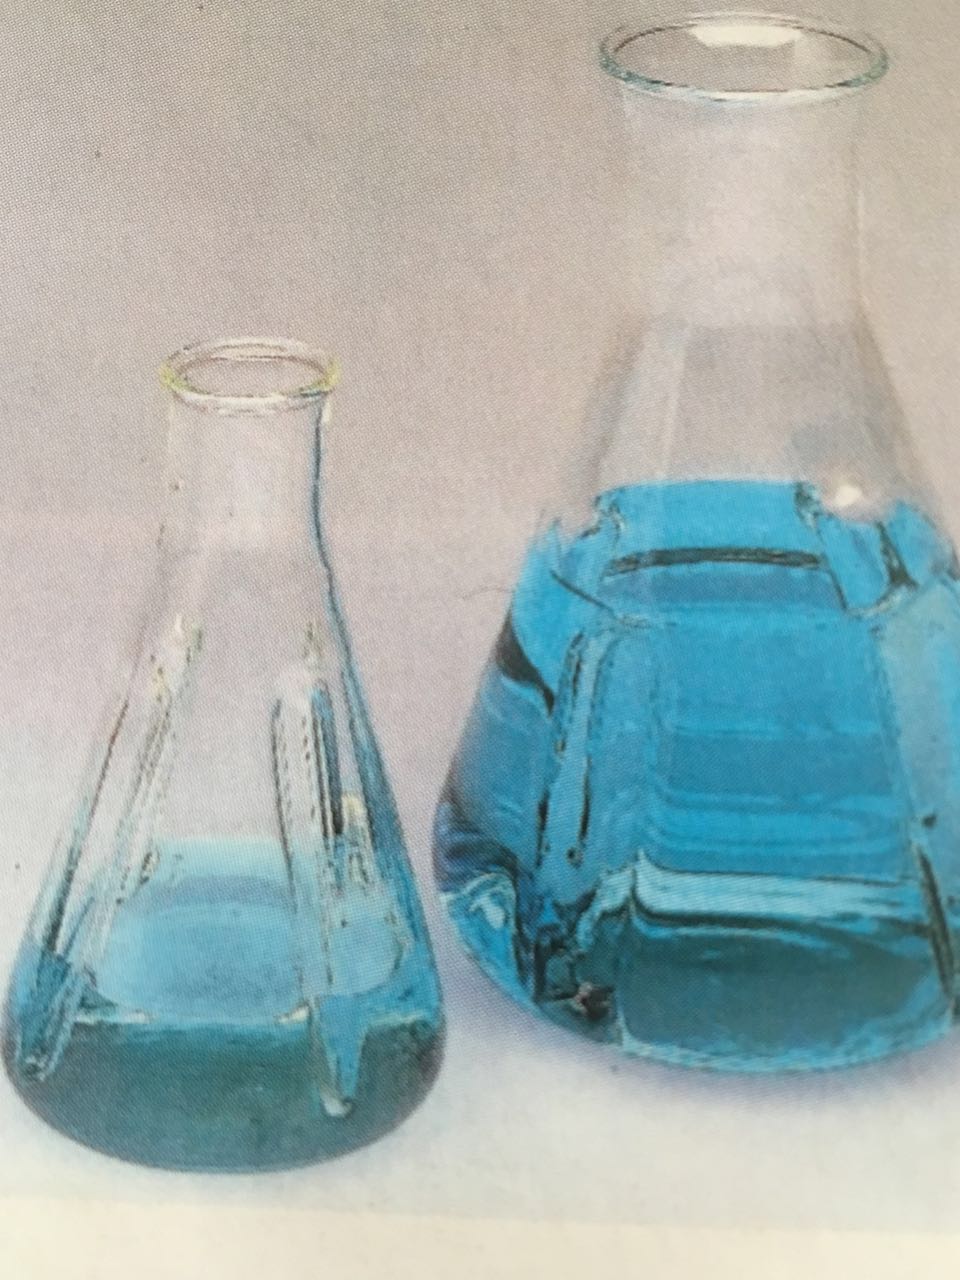 硫酸铈滴定液北京华科盛精细化工产品贸易有限公司